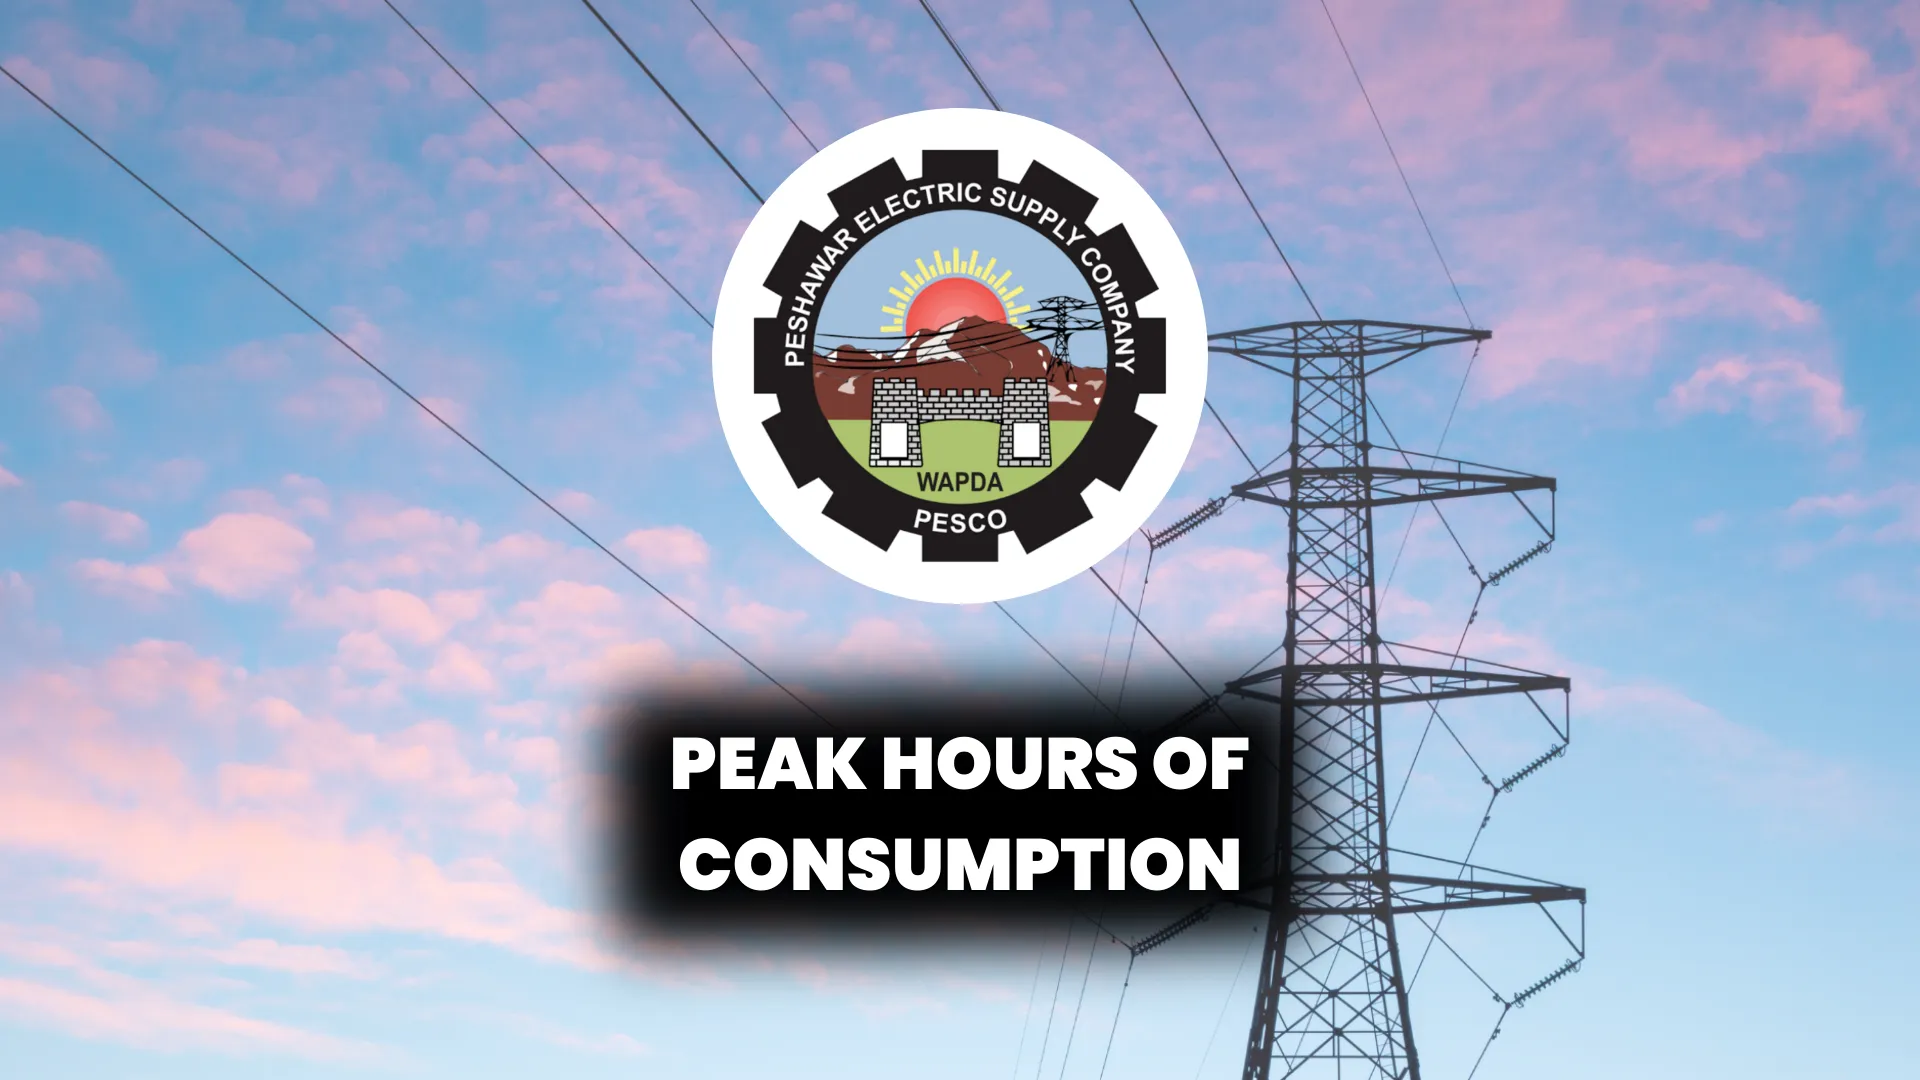 Peak hours of consumption